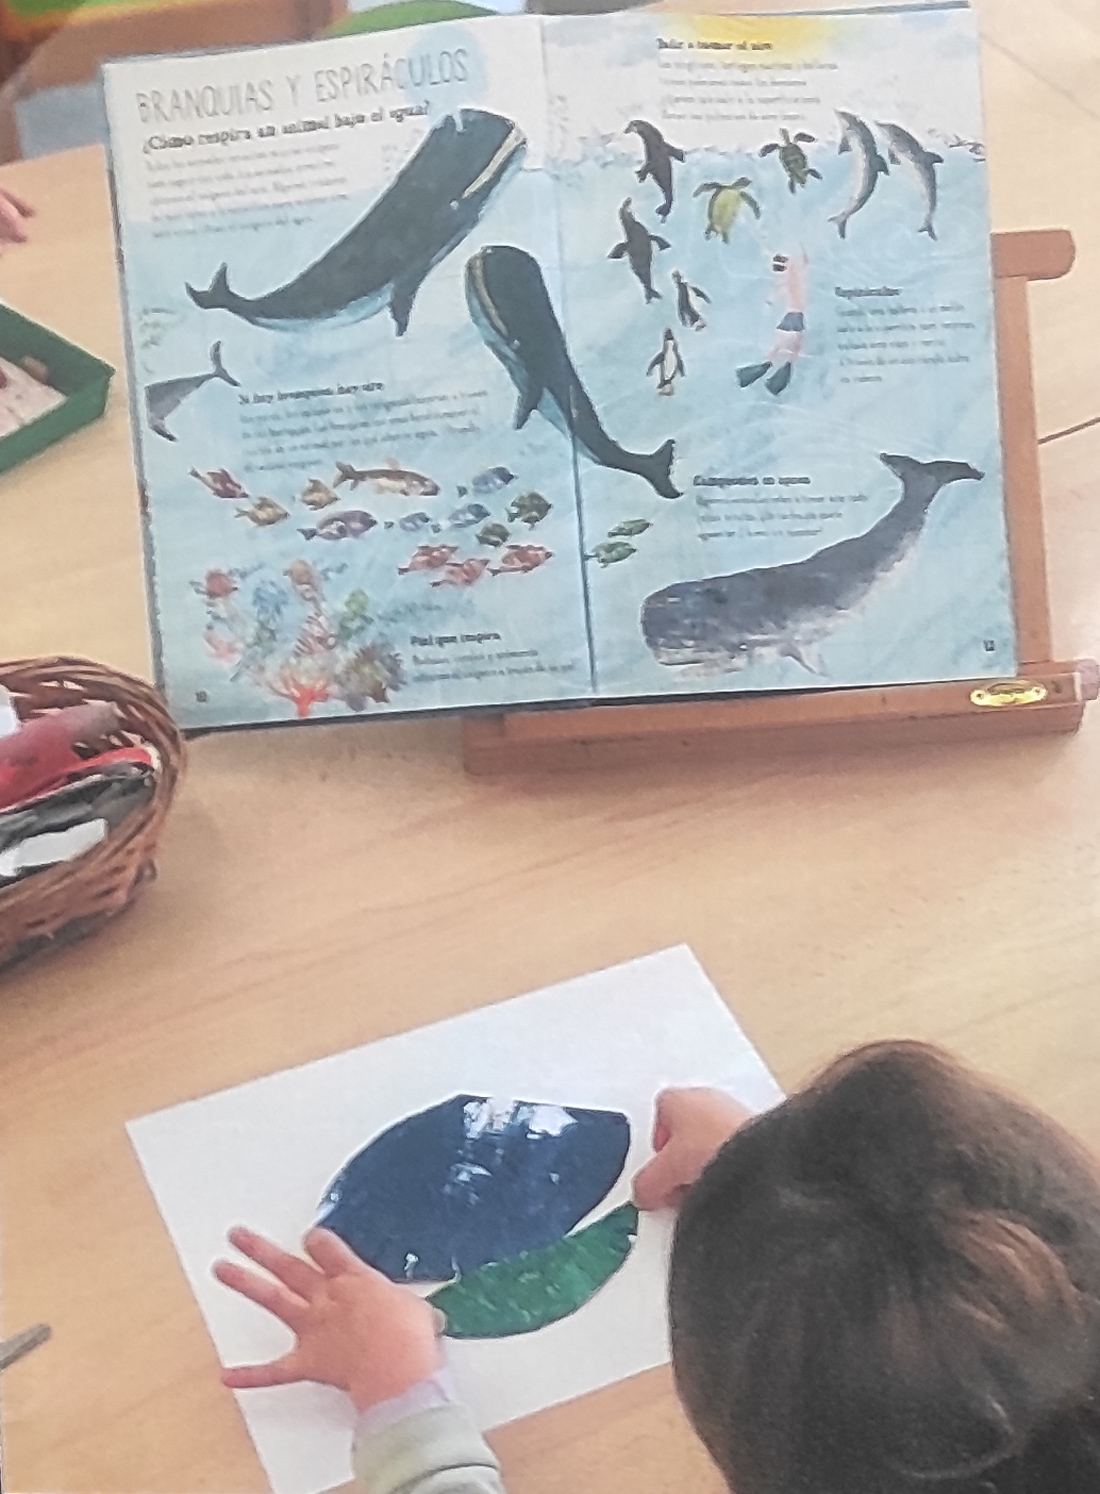 Una niña, de espaldas, observa un libro con ilustraciones de ballenas mientras recrea en un folio una de ellas con papel pintado